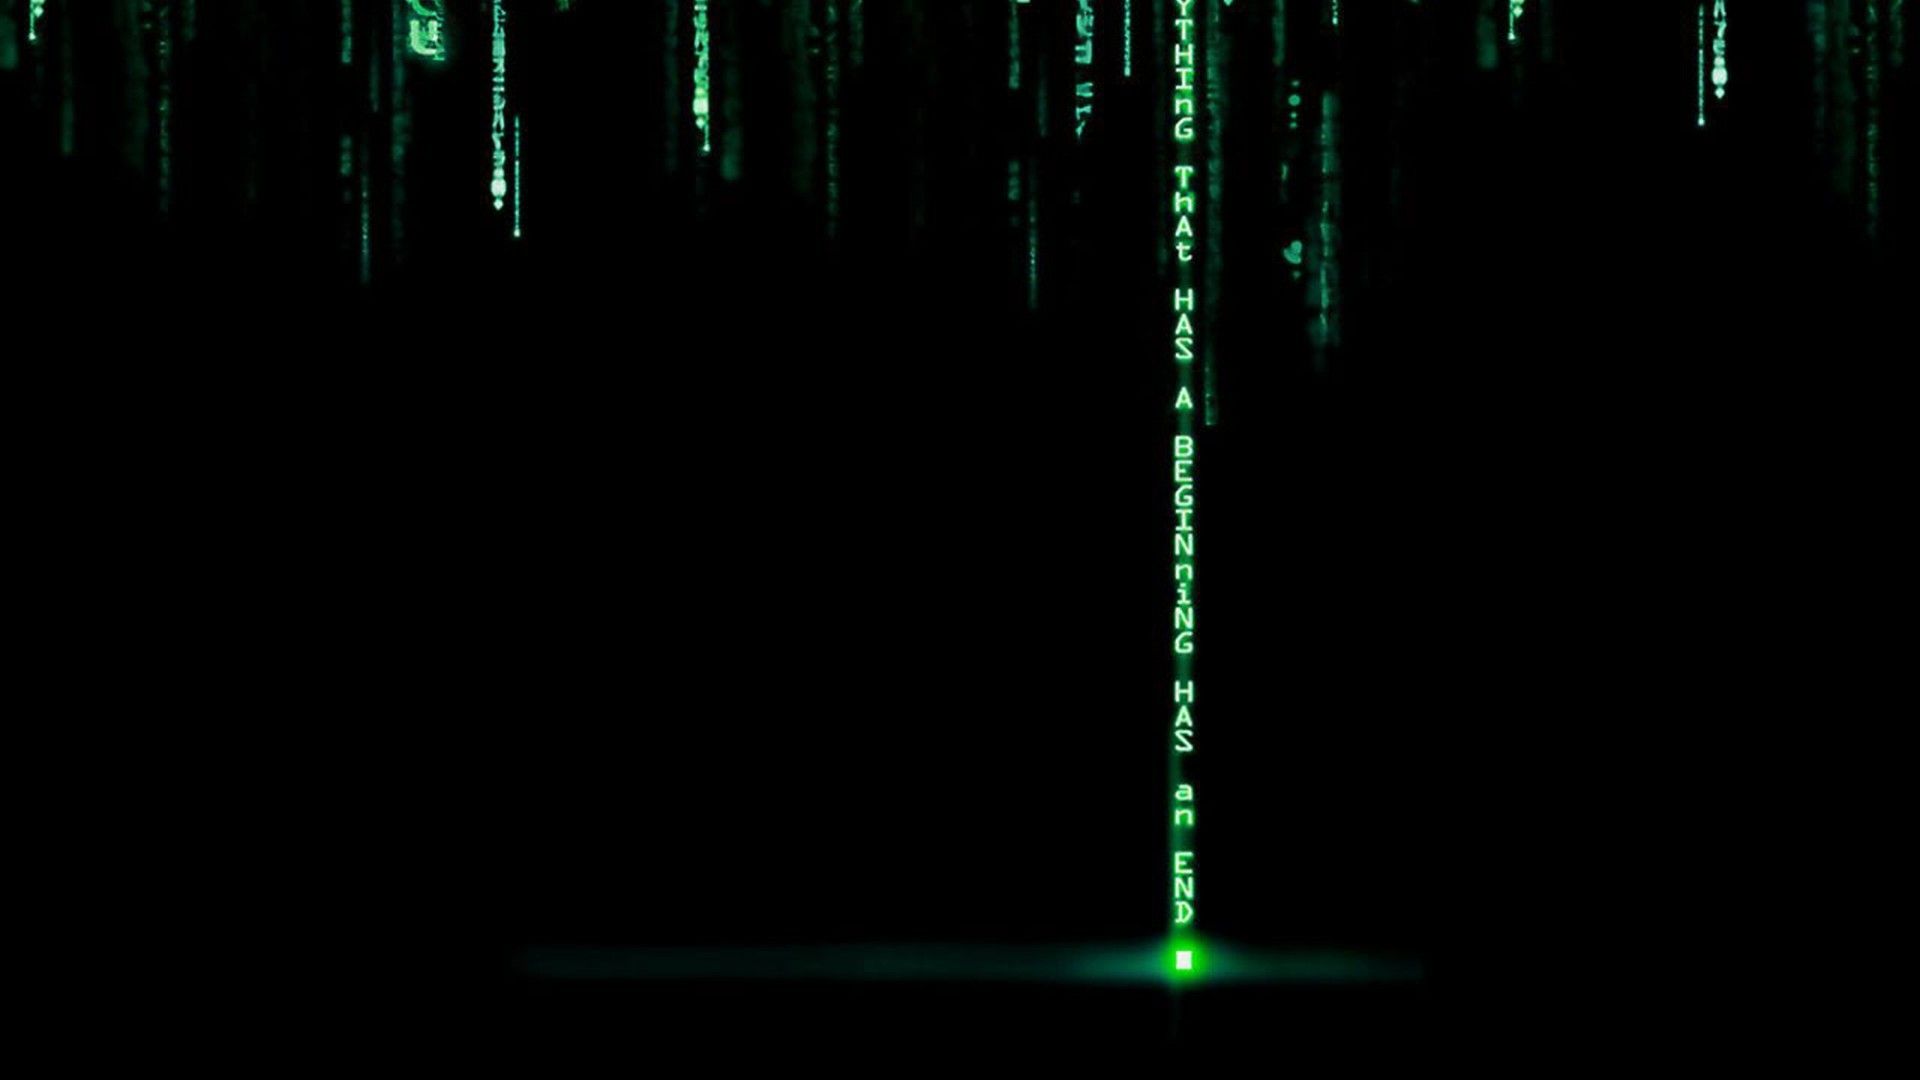 Matrix desktop wallpaper in HD - The code - 1 2 3 4 5